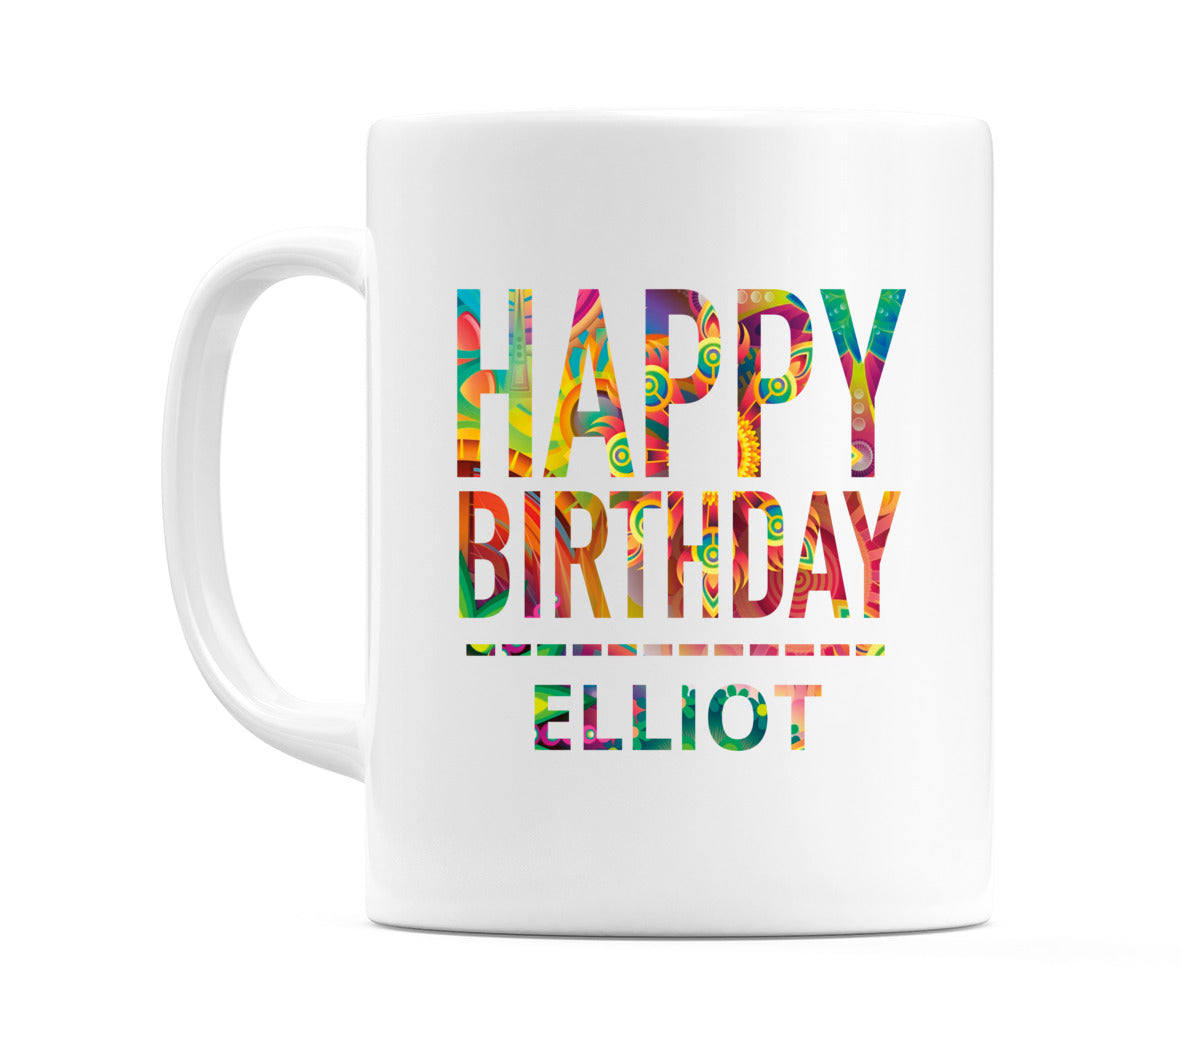 Happy Birthday Elliot (Tie Dye Effect) Mug Cup by WeDoMugs